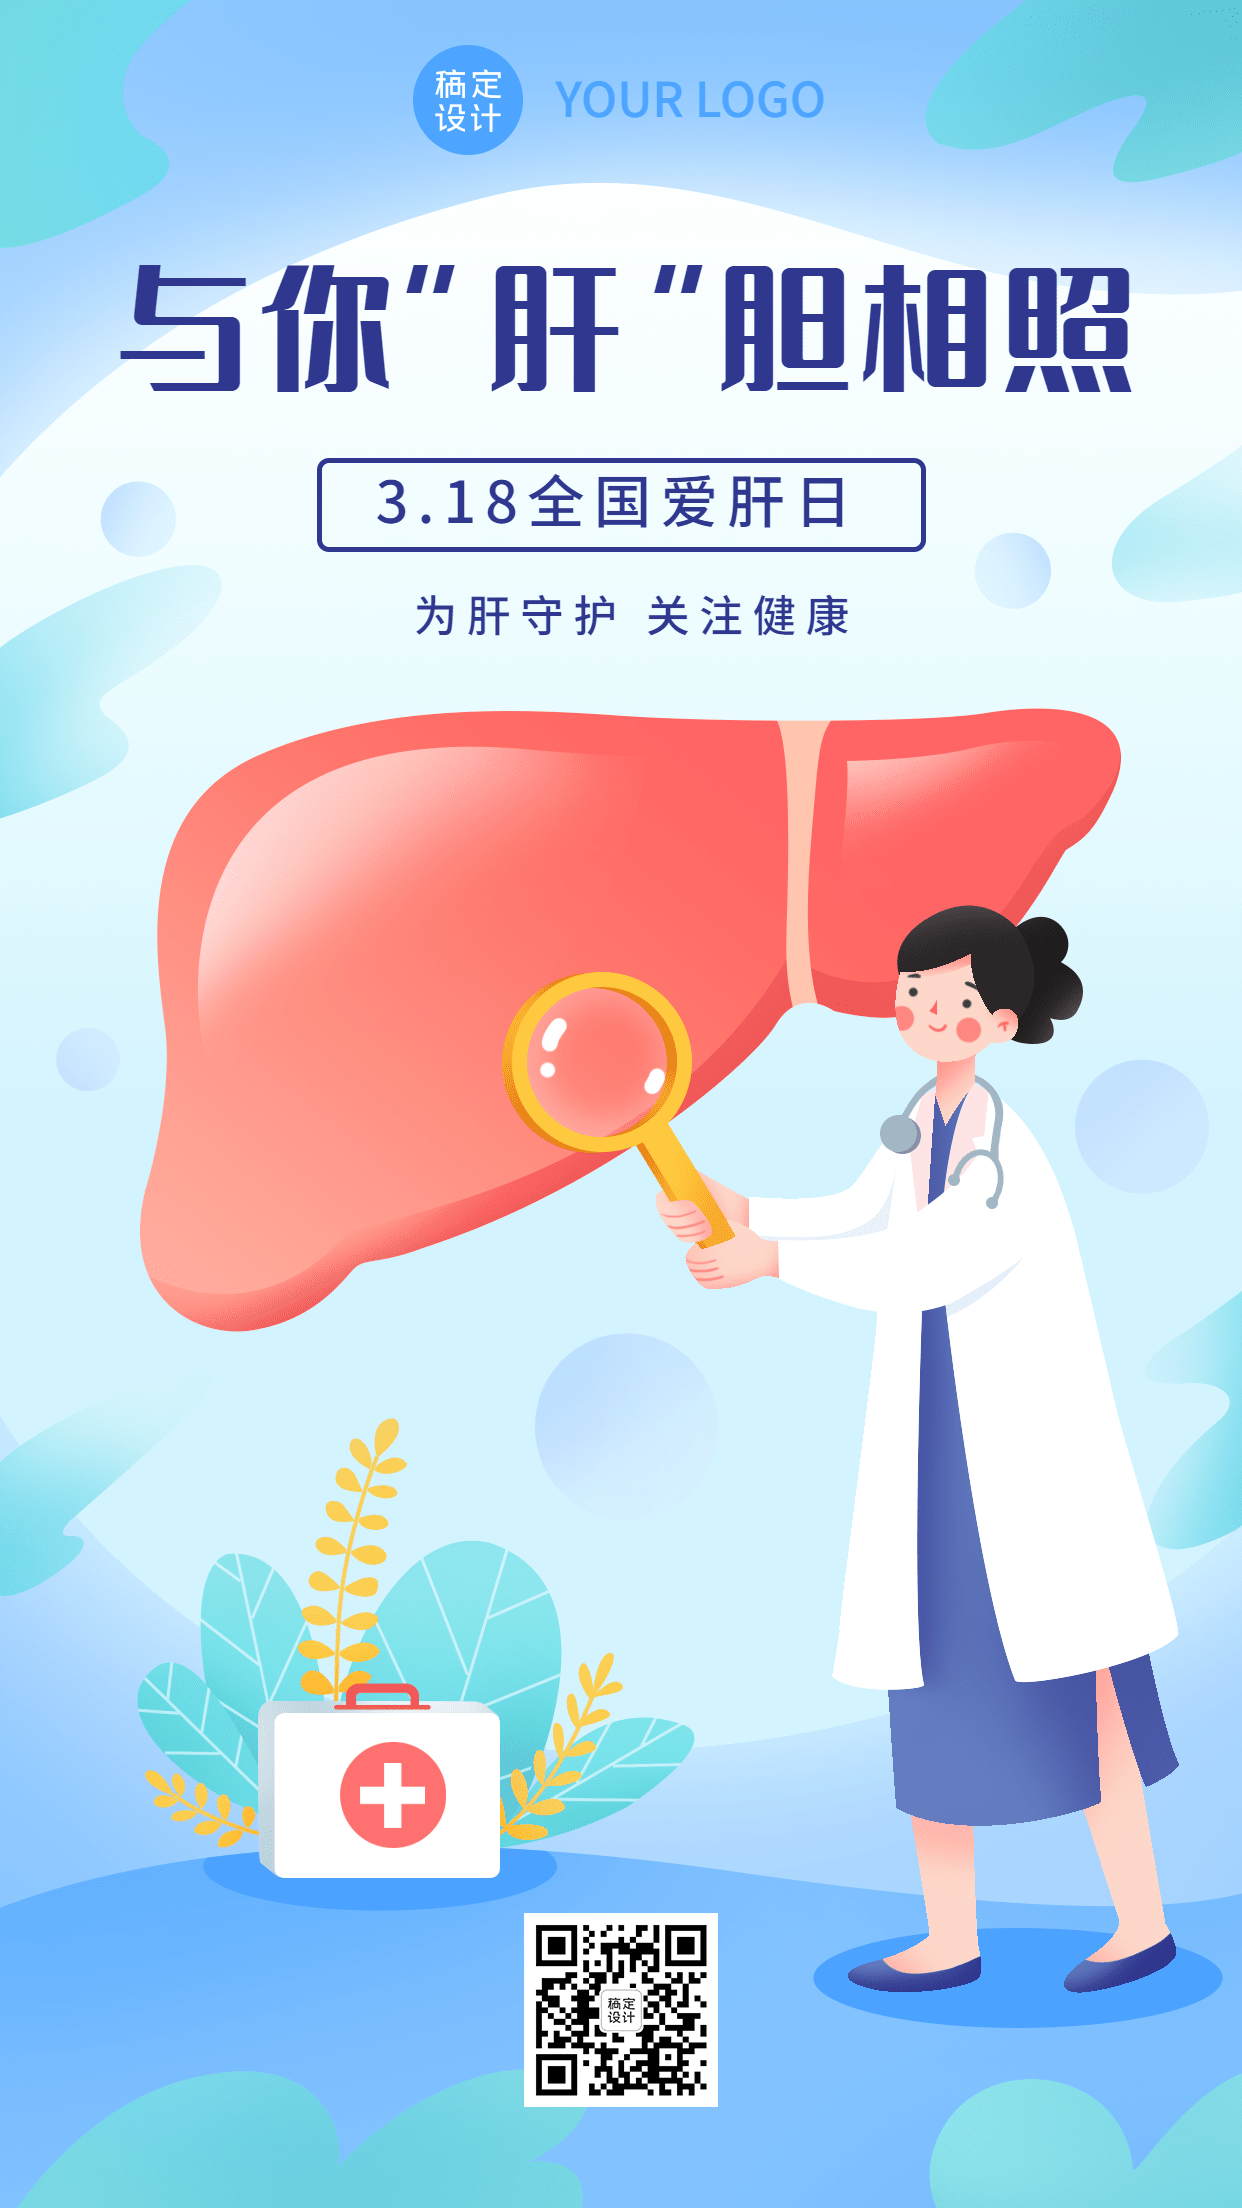 3.18全国爱肝日节日宣传手绘插画手机海报